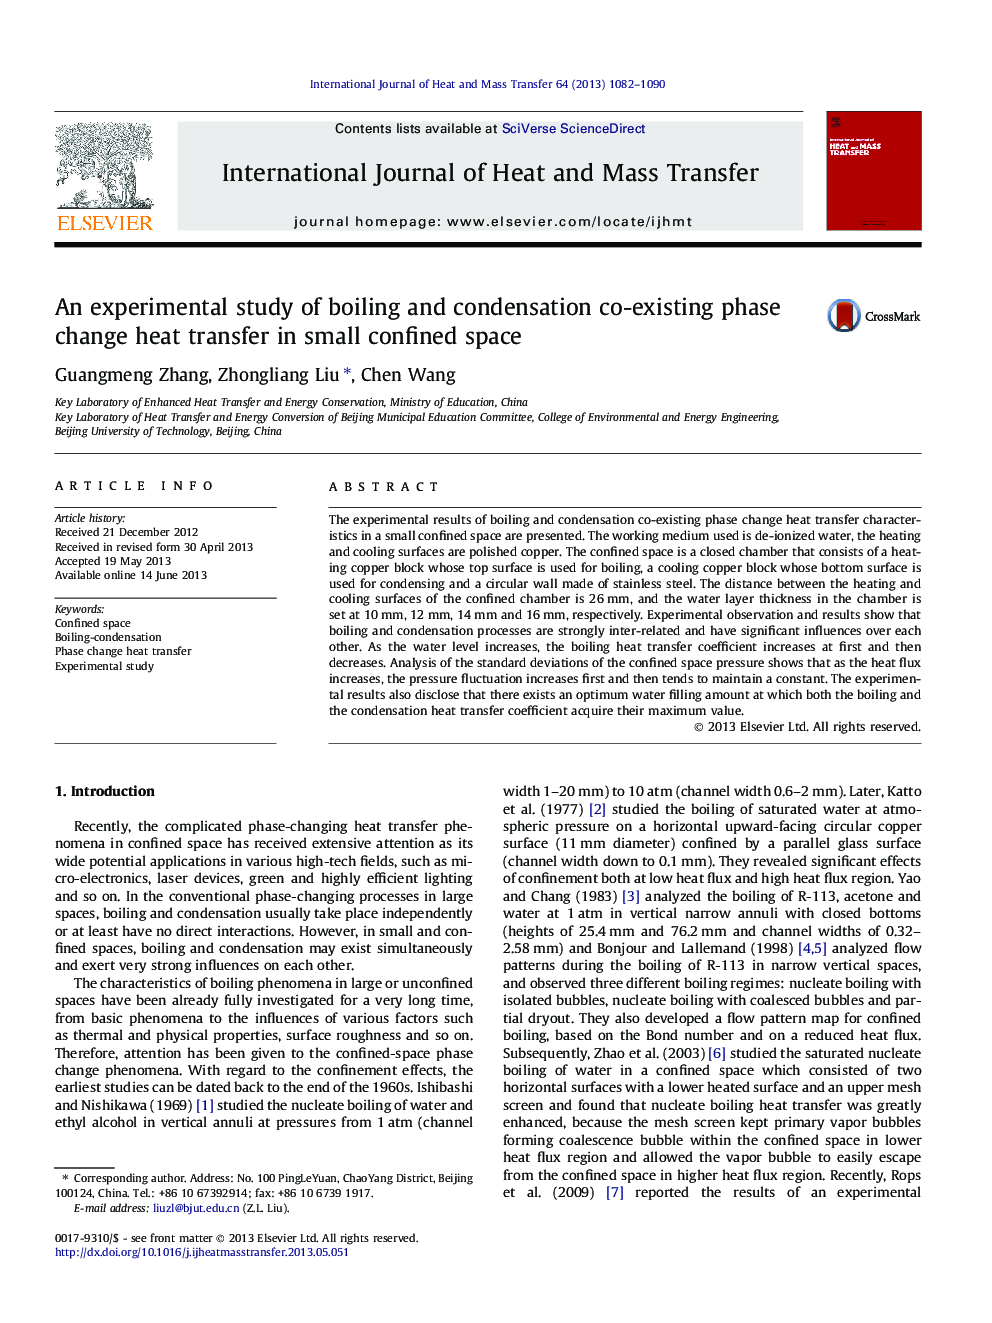 یک مطالعه آزمایشی در مورد جابجایی و تعویض فاز تغییر جابجایی فاز در فضای کوچک محدود 